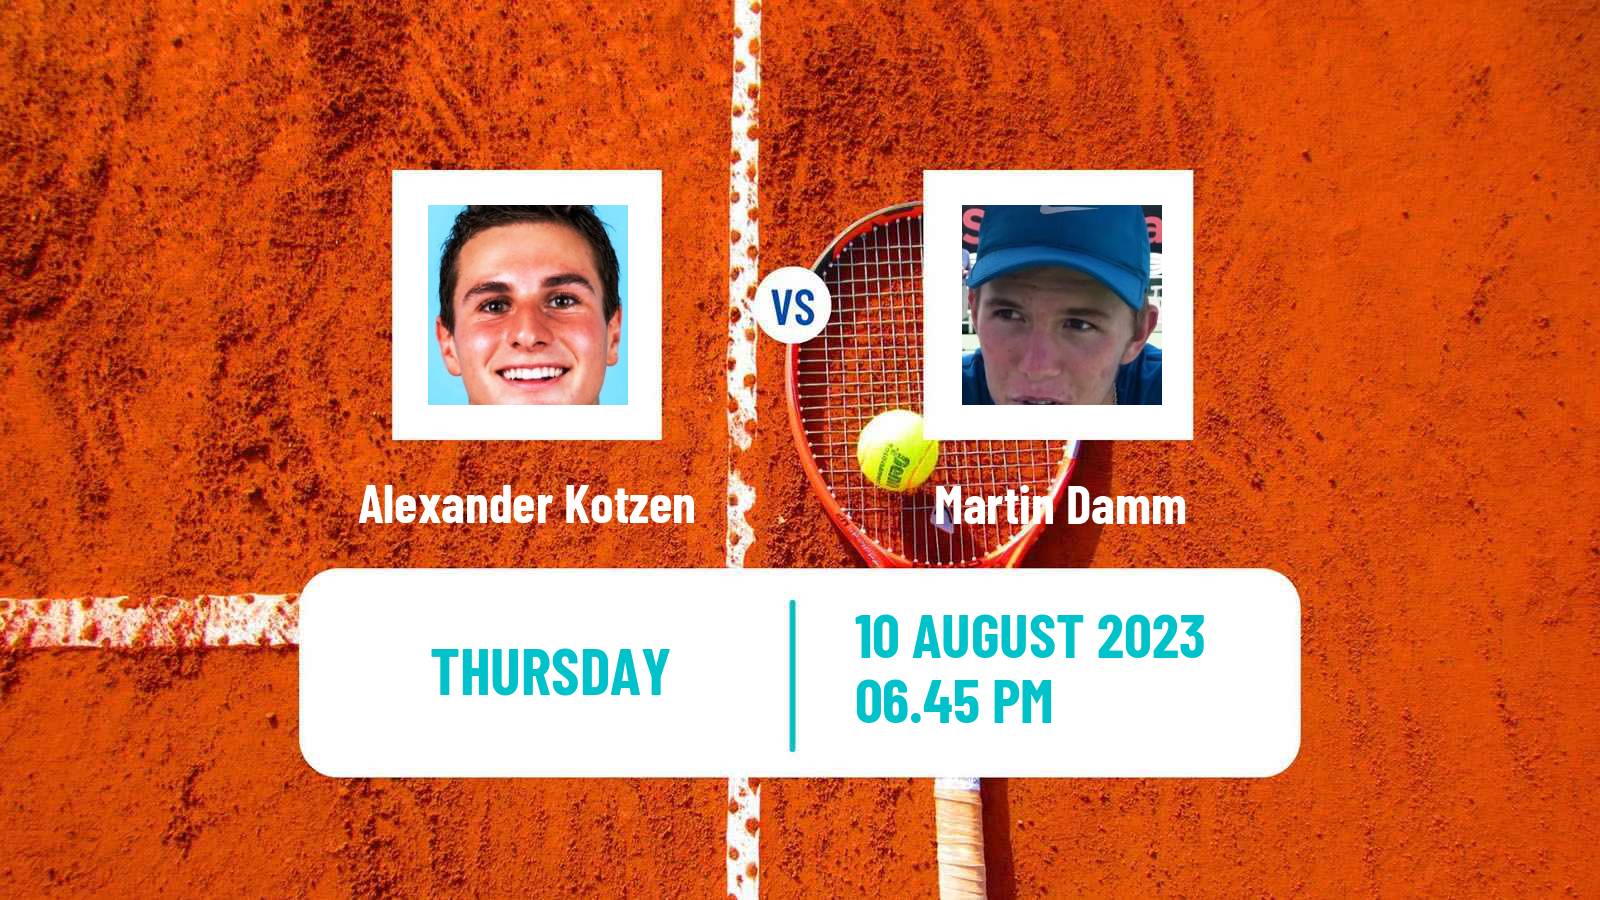 Tennis ITF M25 Southaven Ms Men Alexander Kotzen - Martin Damm